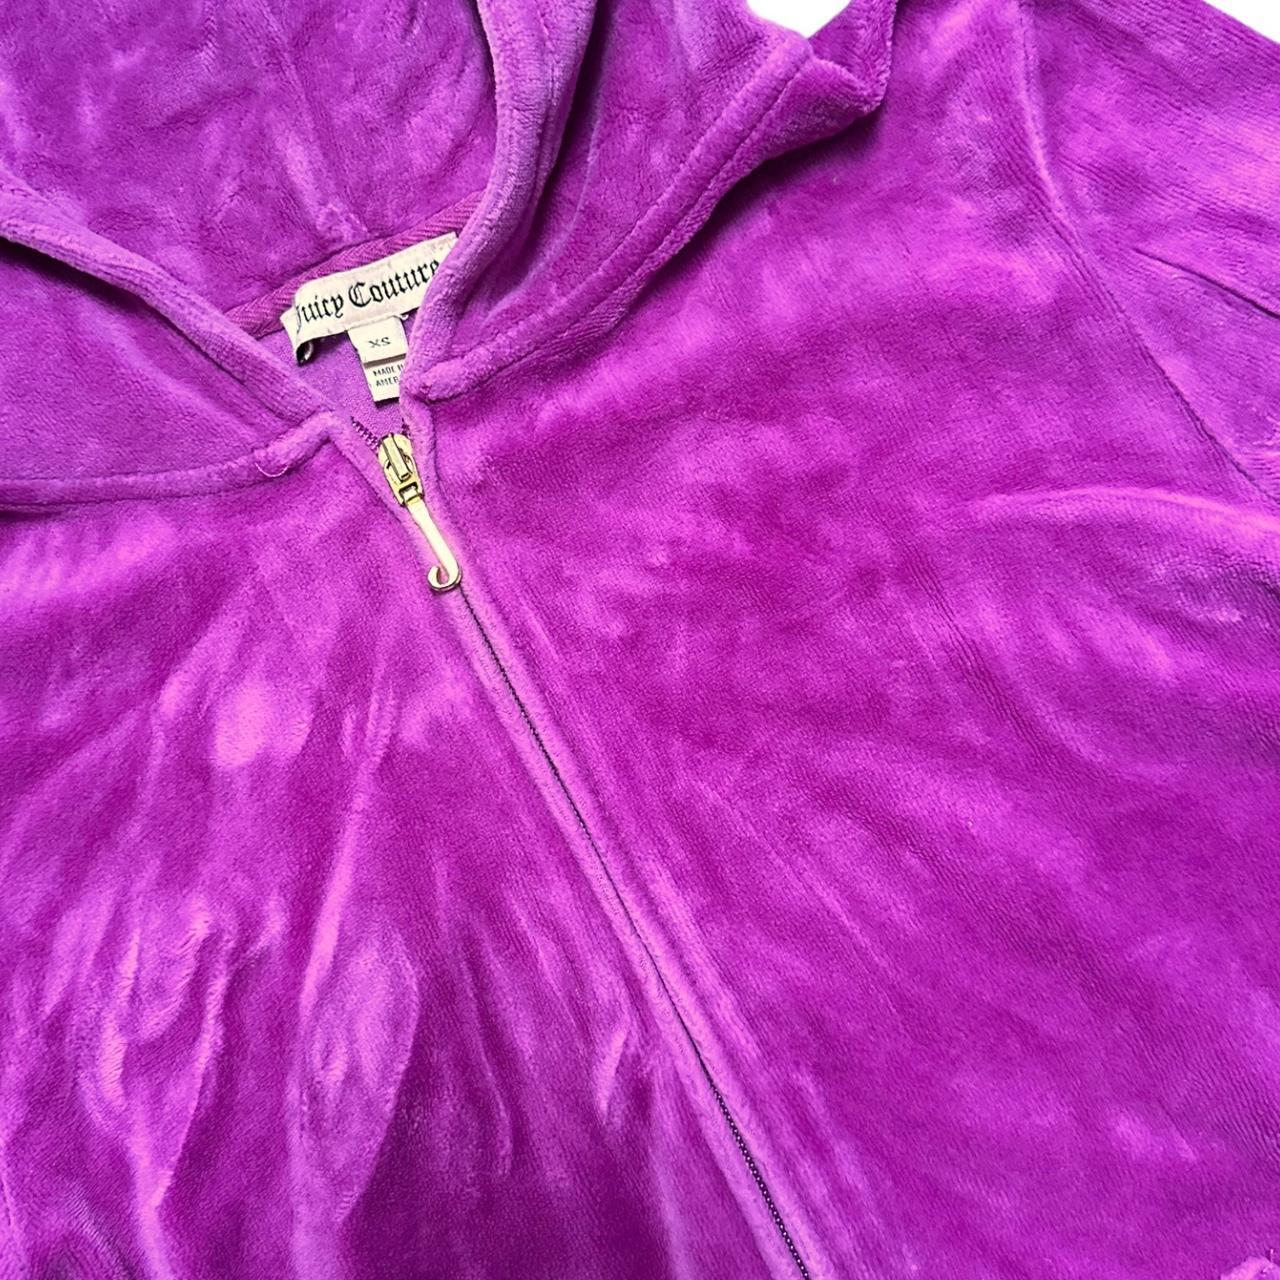 Y2k mcbling Juicy Couture purple/pink velour... - Depop